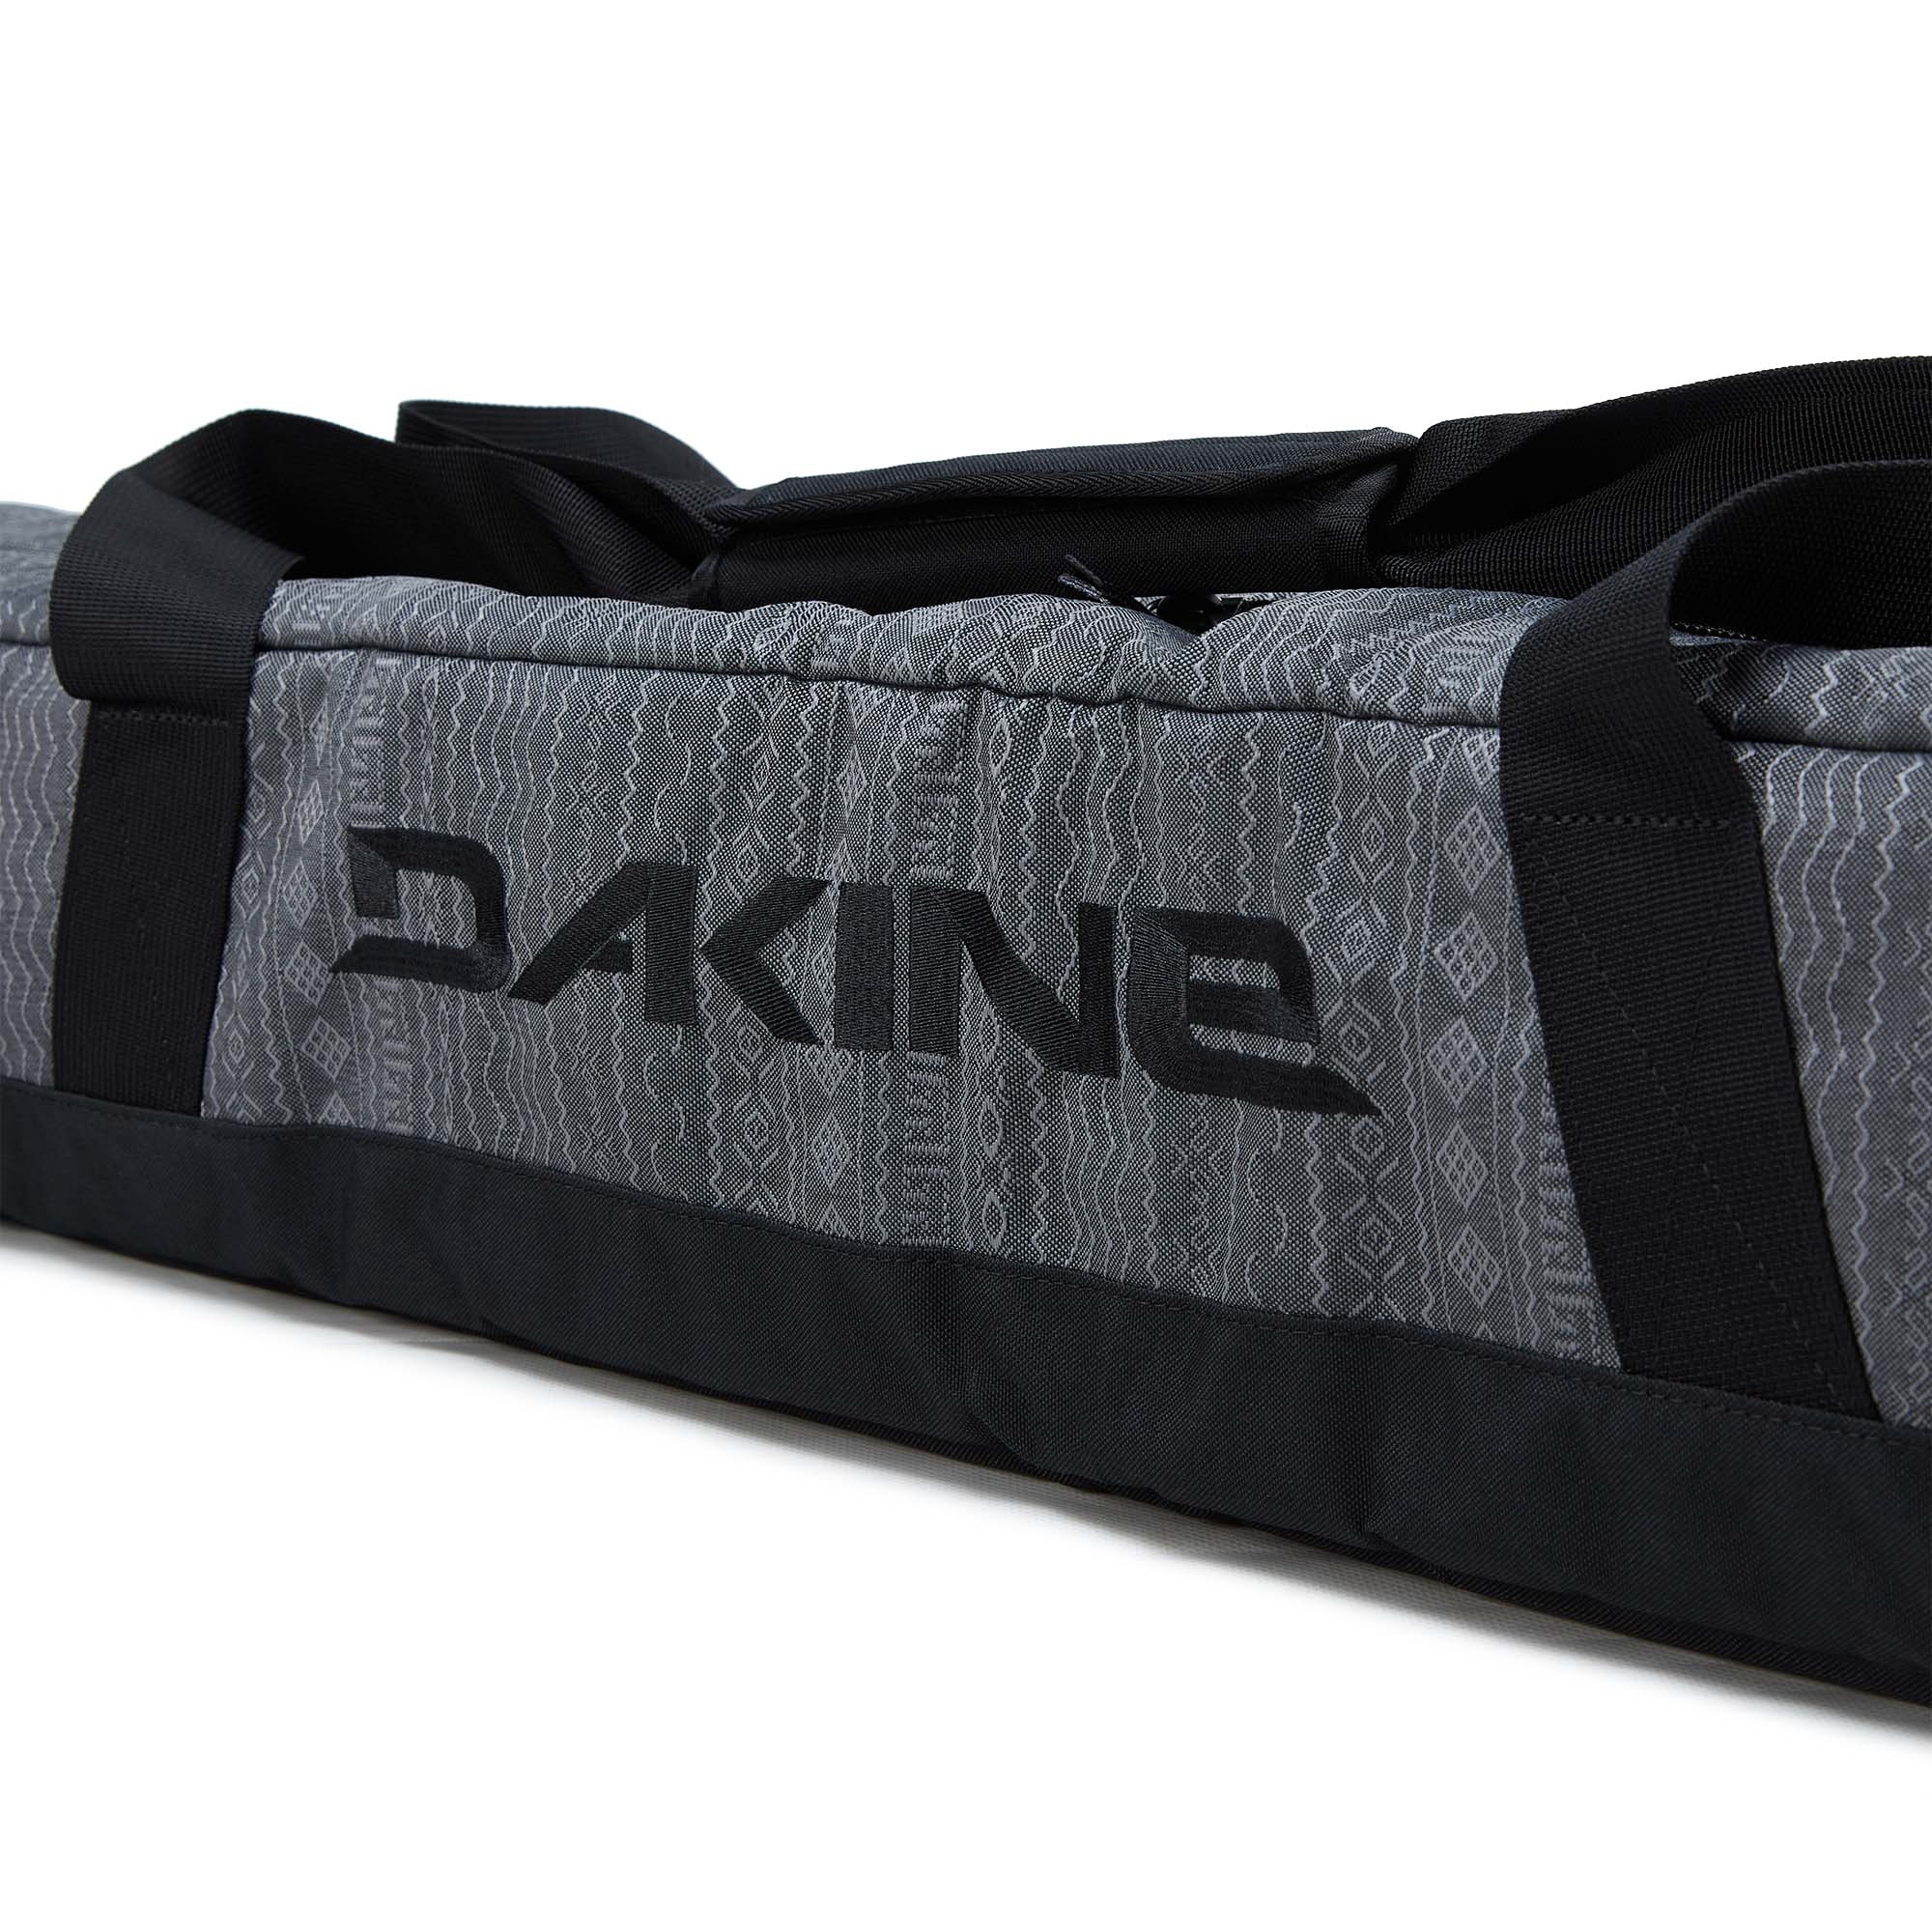 Dakine Padded Ski Sleeve Ski Travel Bag